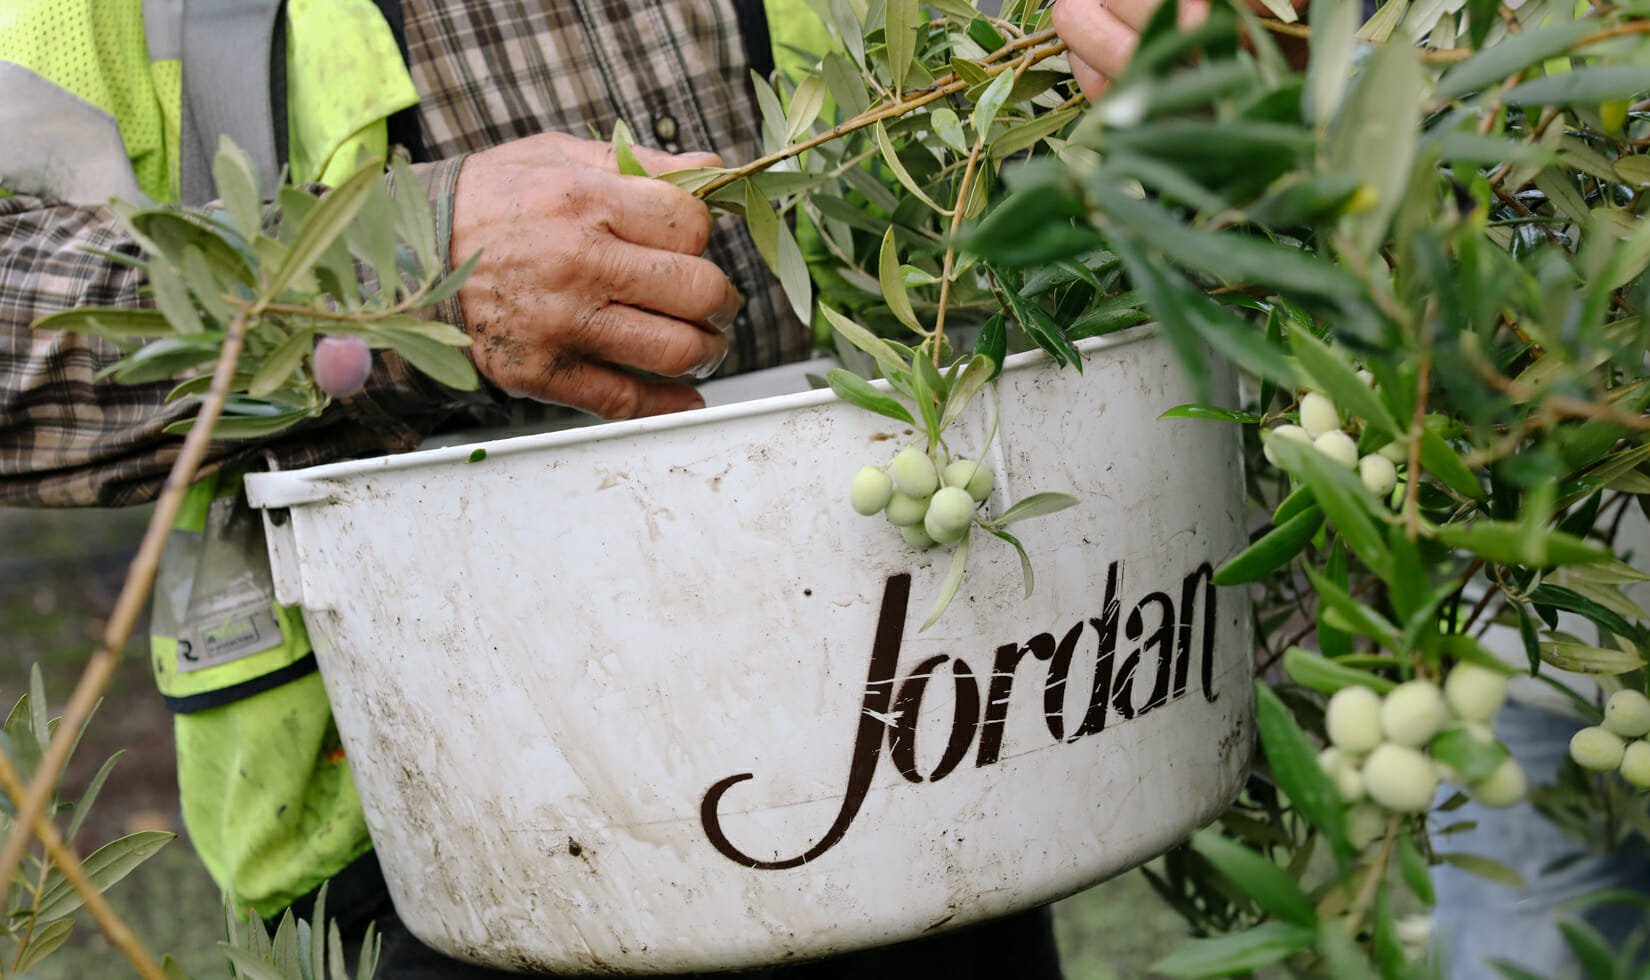 brucatura method, harvesting olives into bucket